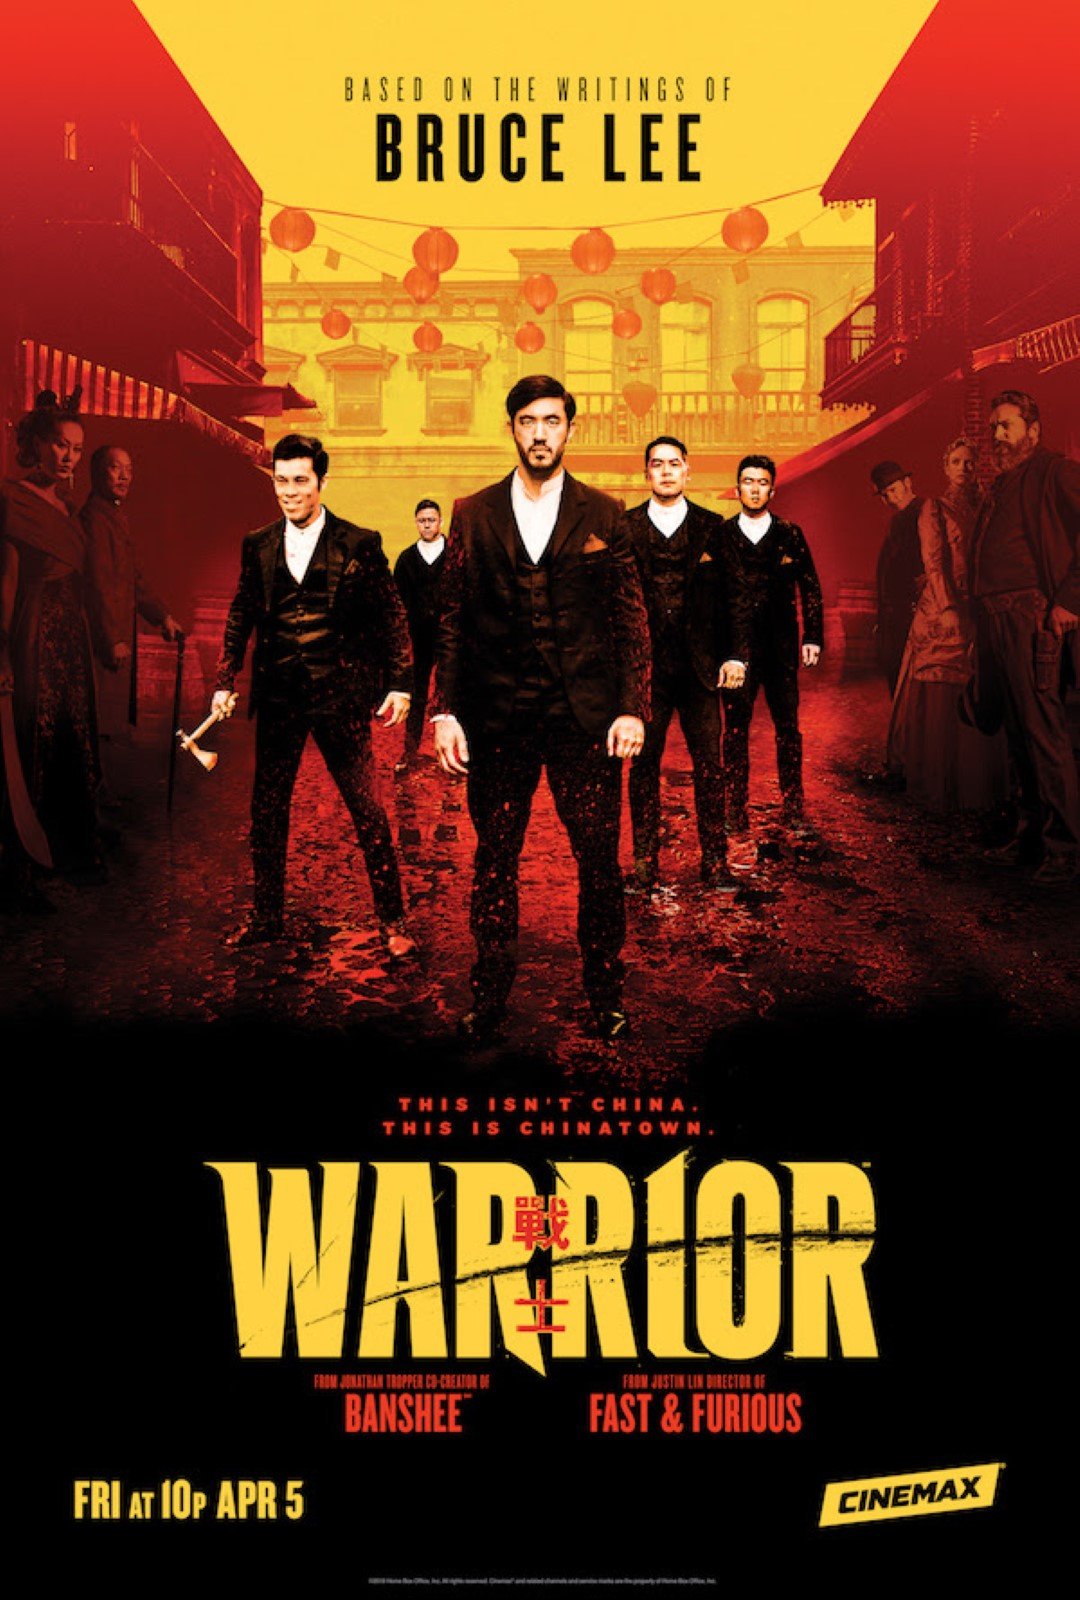 Warrior: Trailer da 2ª temporada traz muita ação e artes marciais